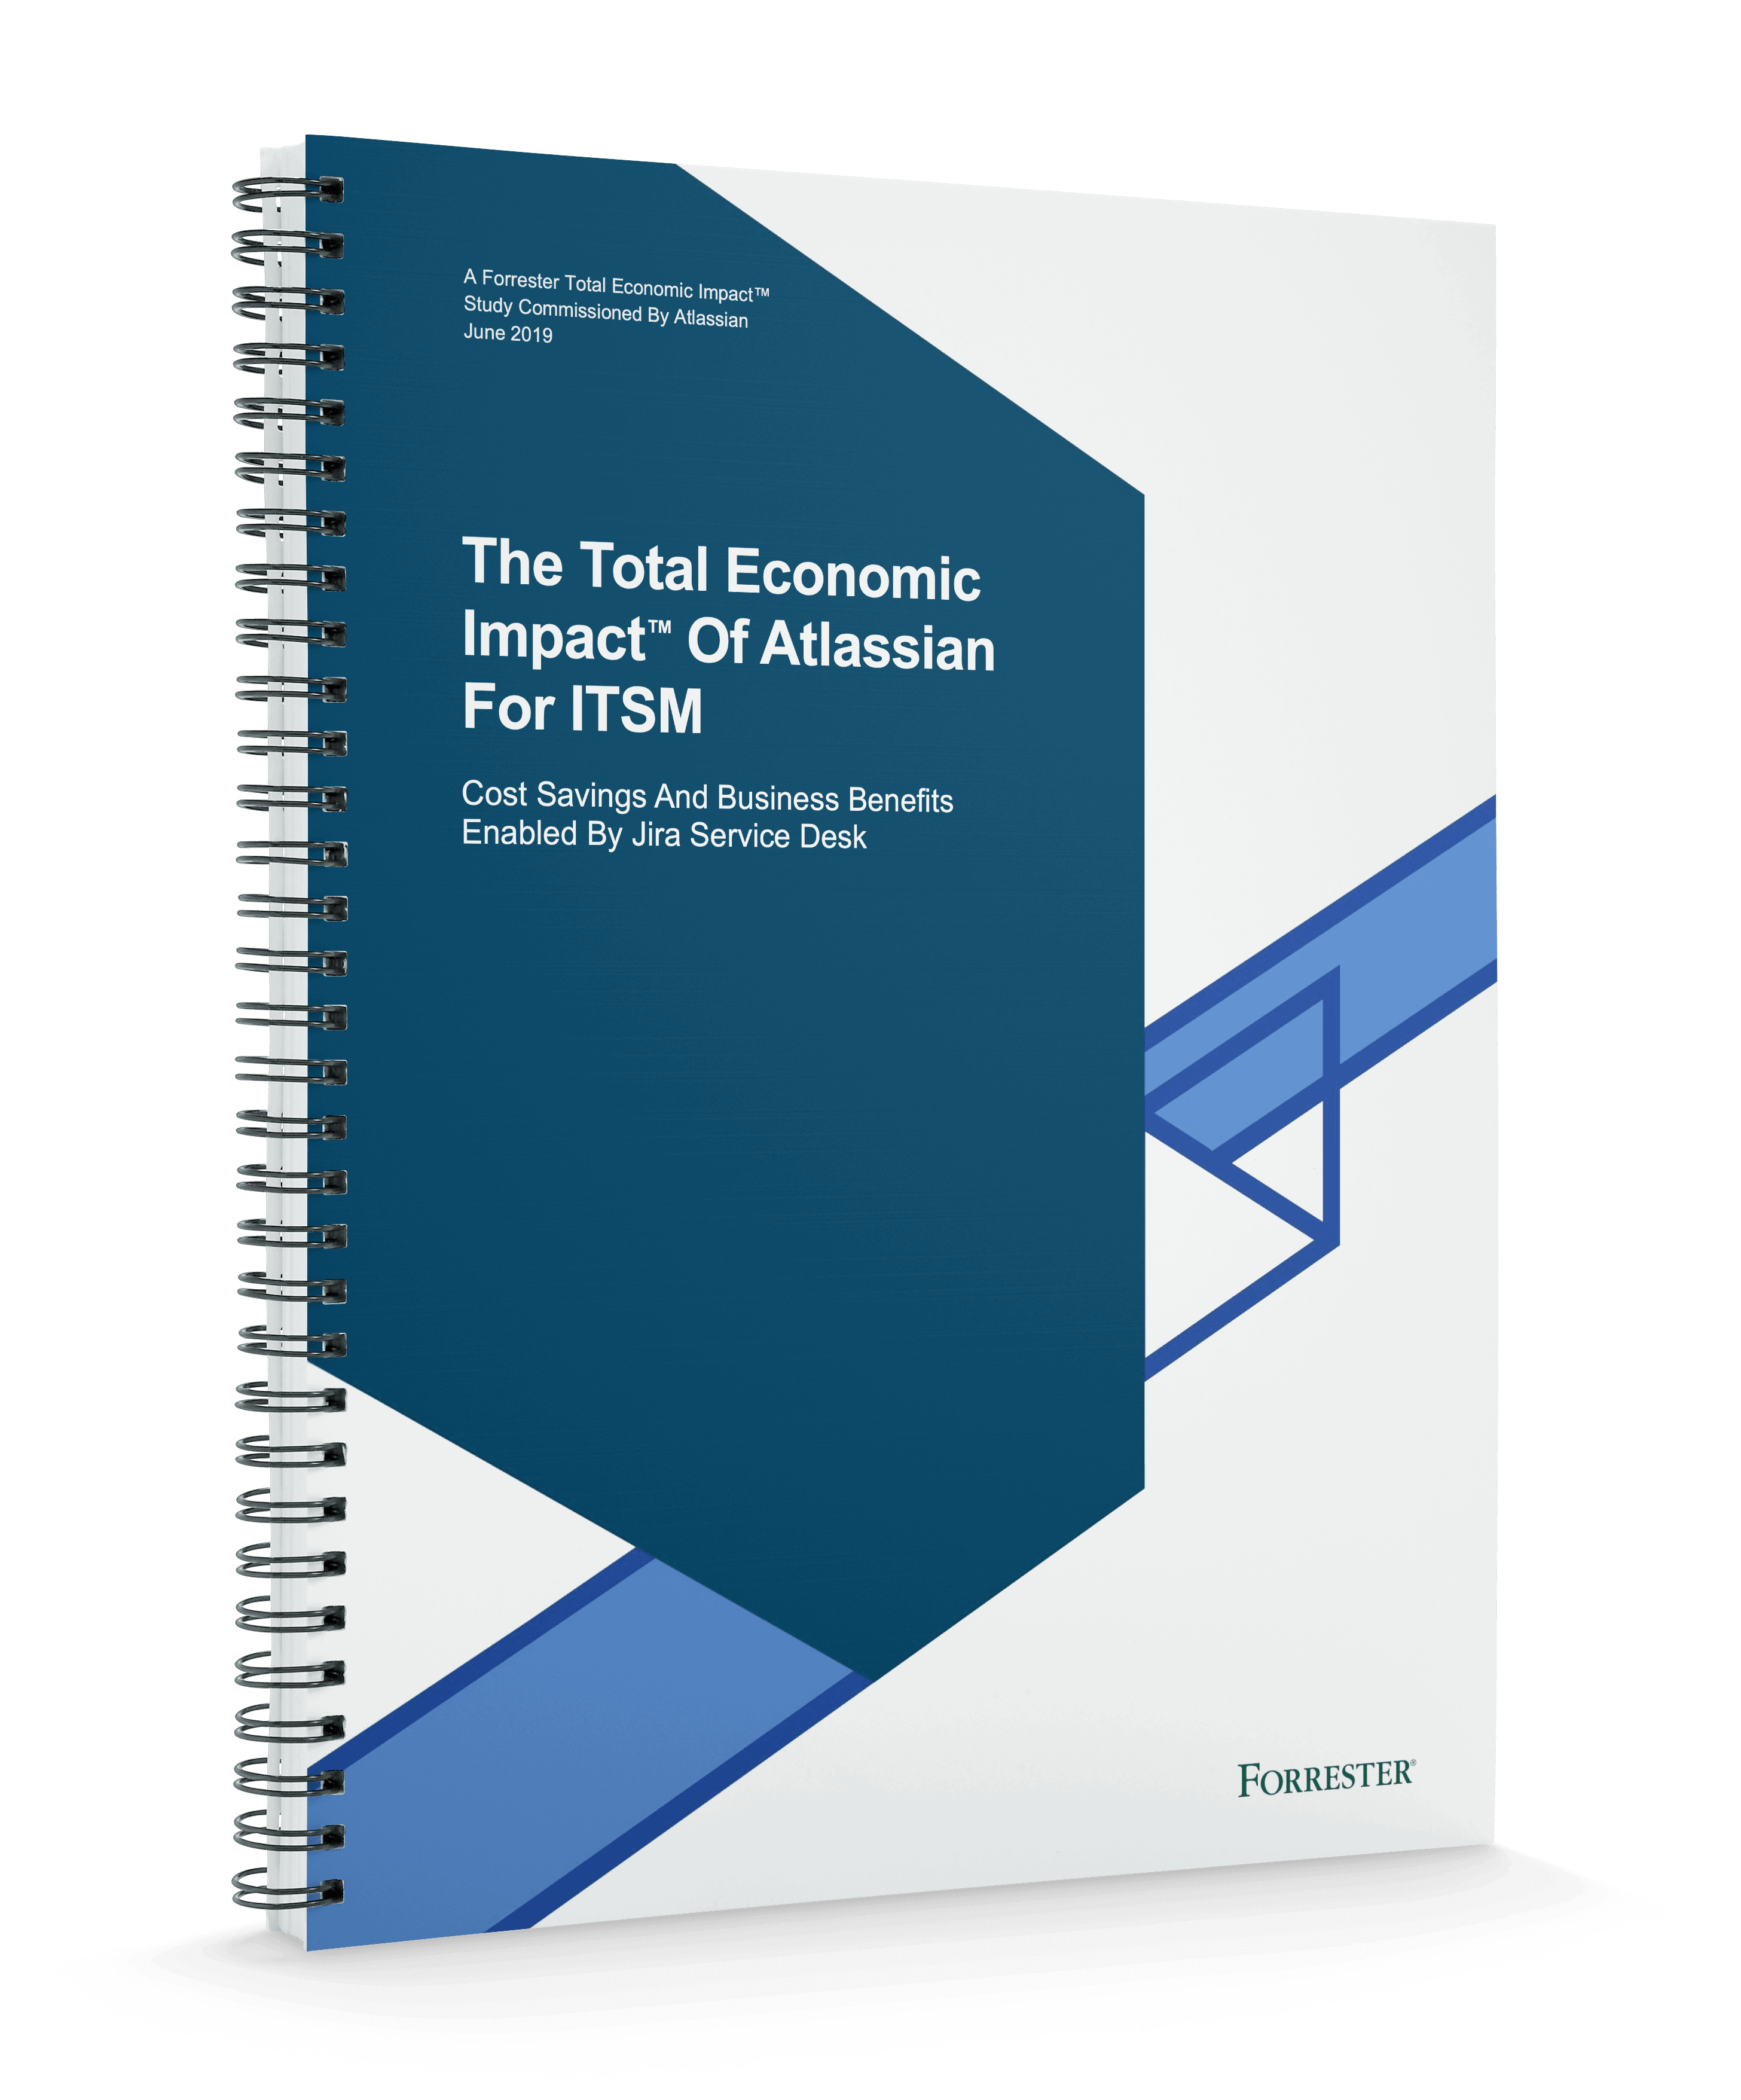 Обложка документа «Совокупный экономический эффект ITSM-решения Atlassian» (Total Economic Impact™ Of Atlassian For ITSM)